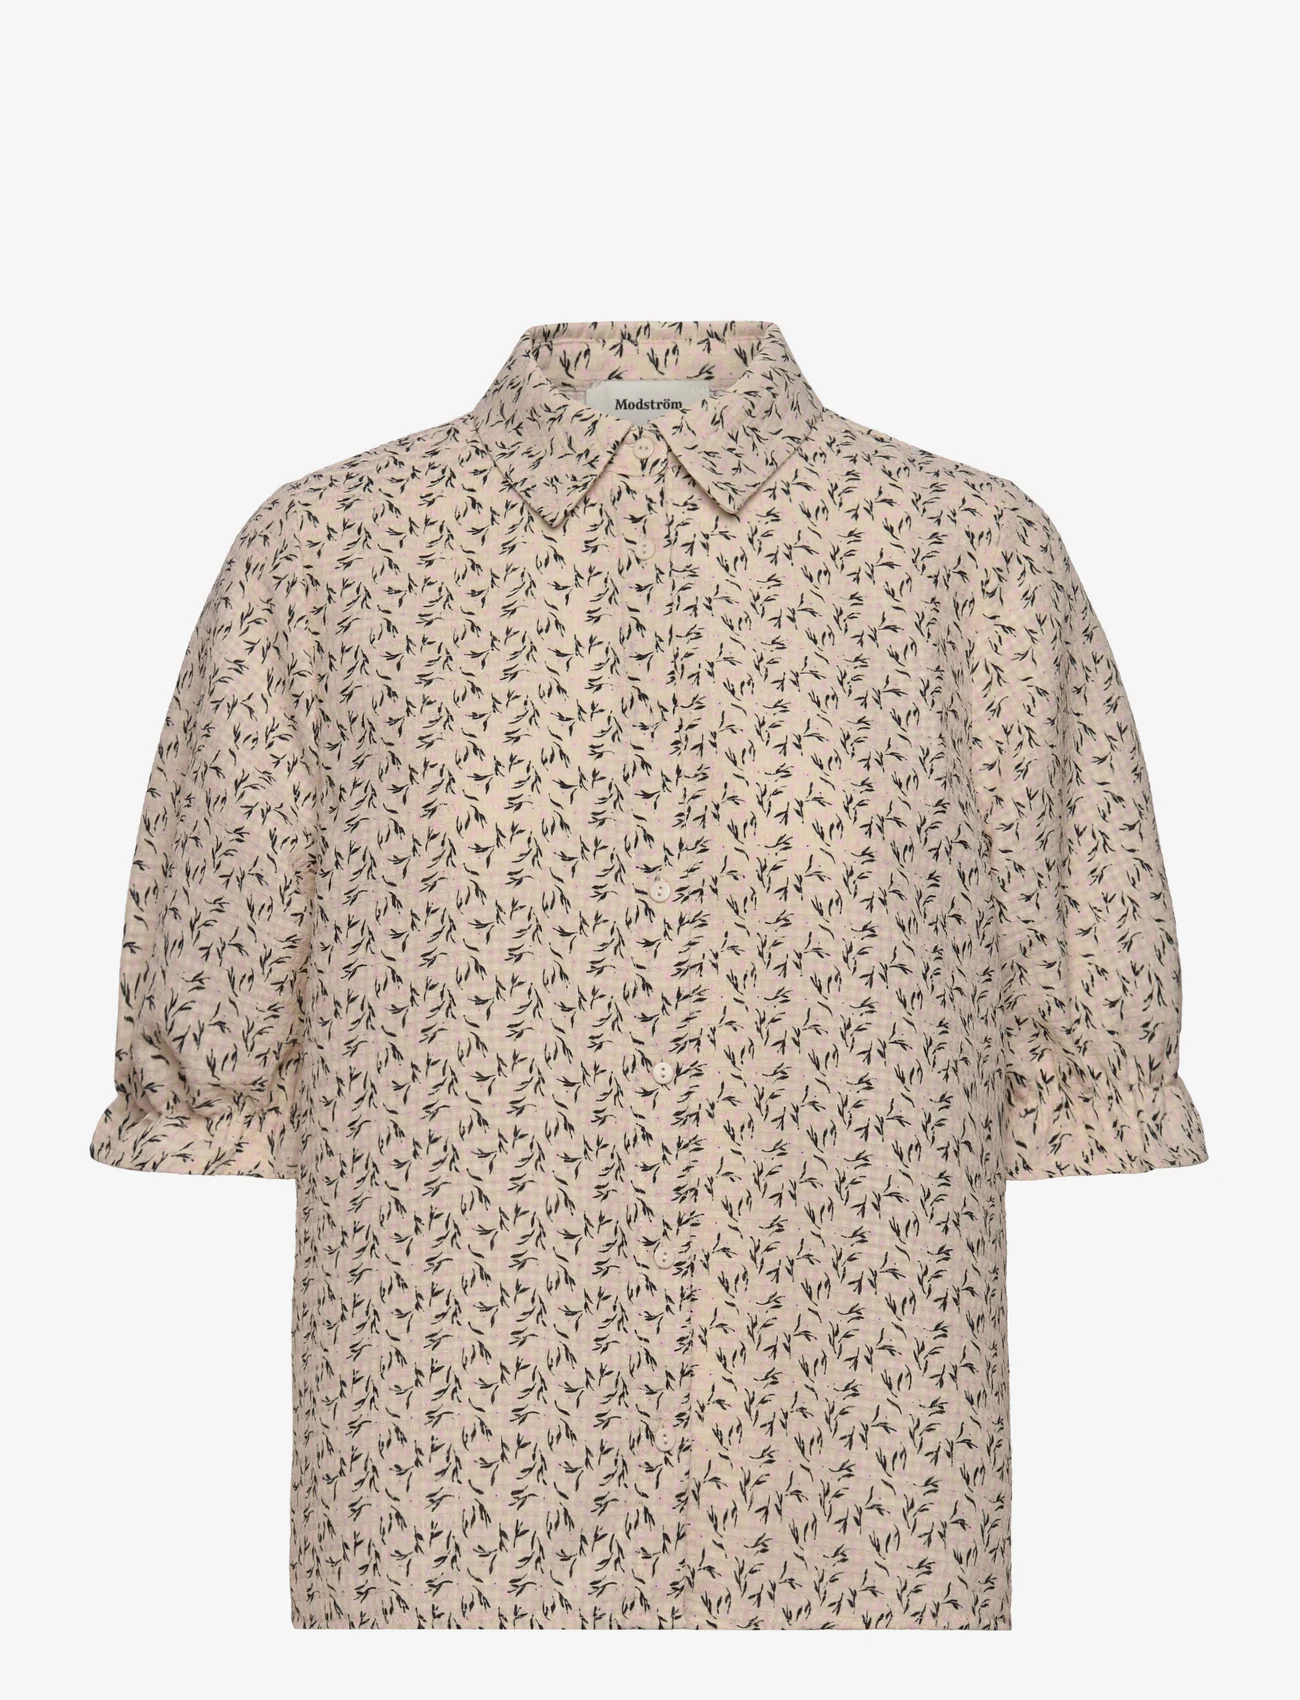 Modström - ChrissyMD print shirt - kurzärmlige hemden - sorbet twirll - 0